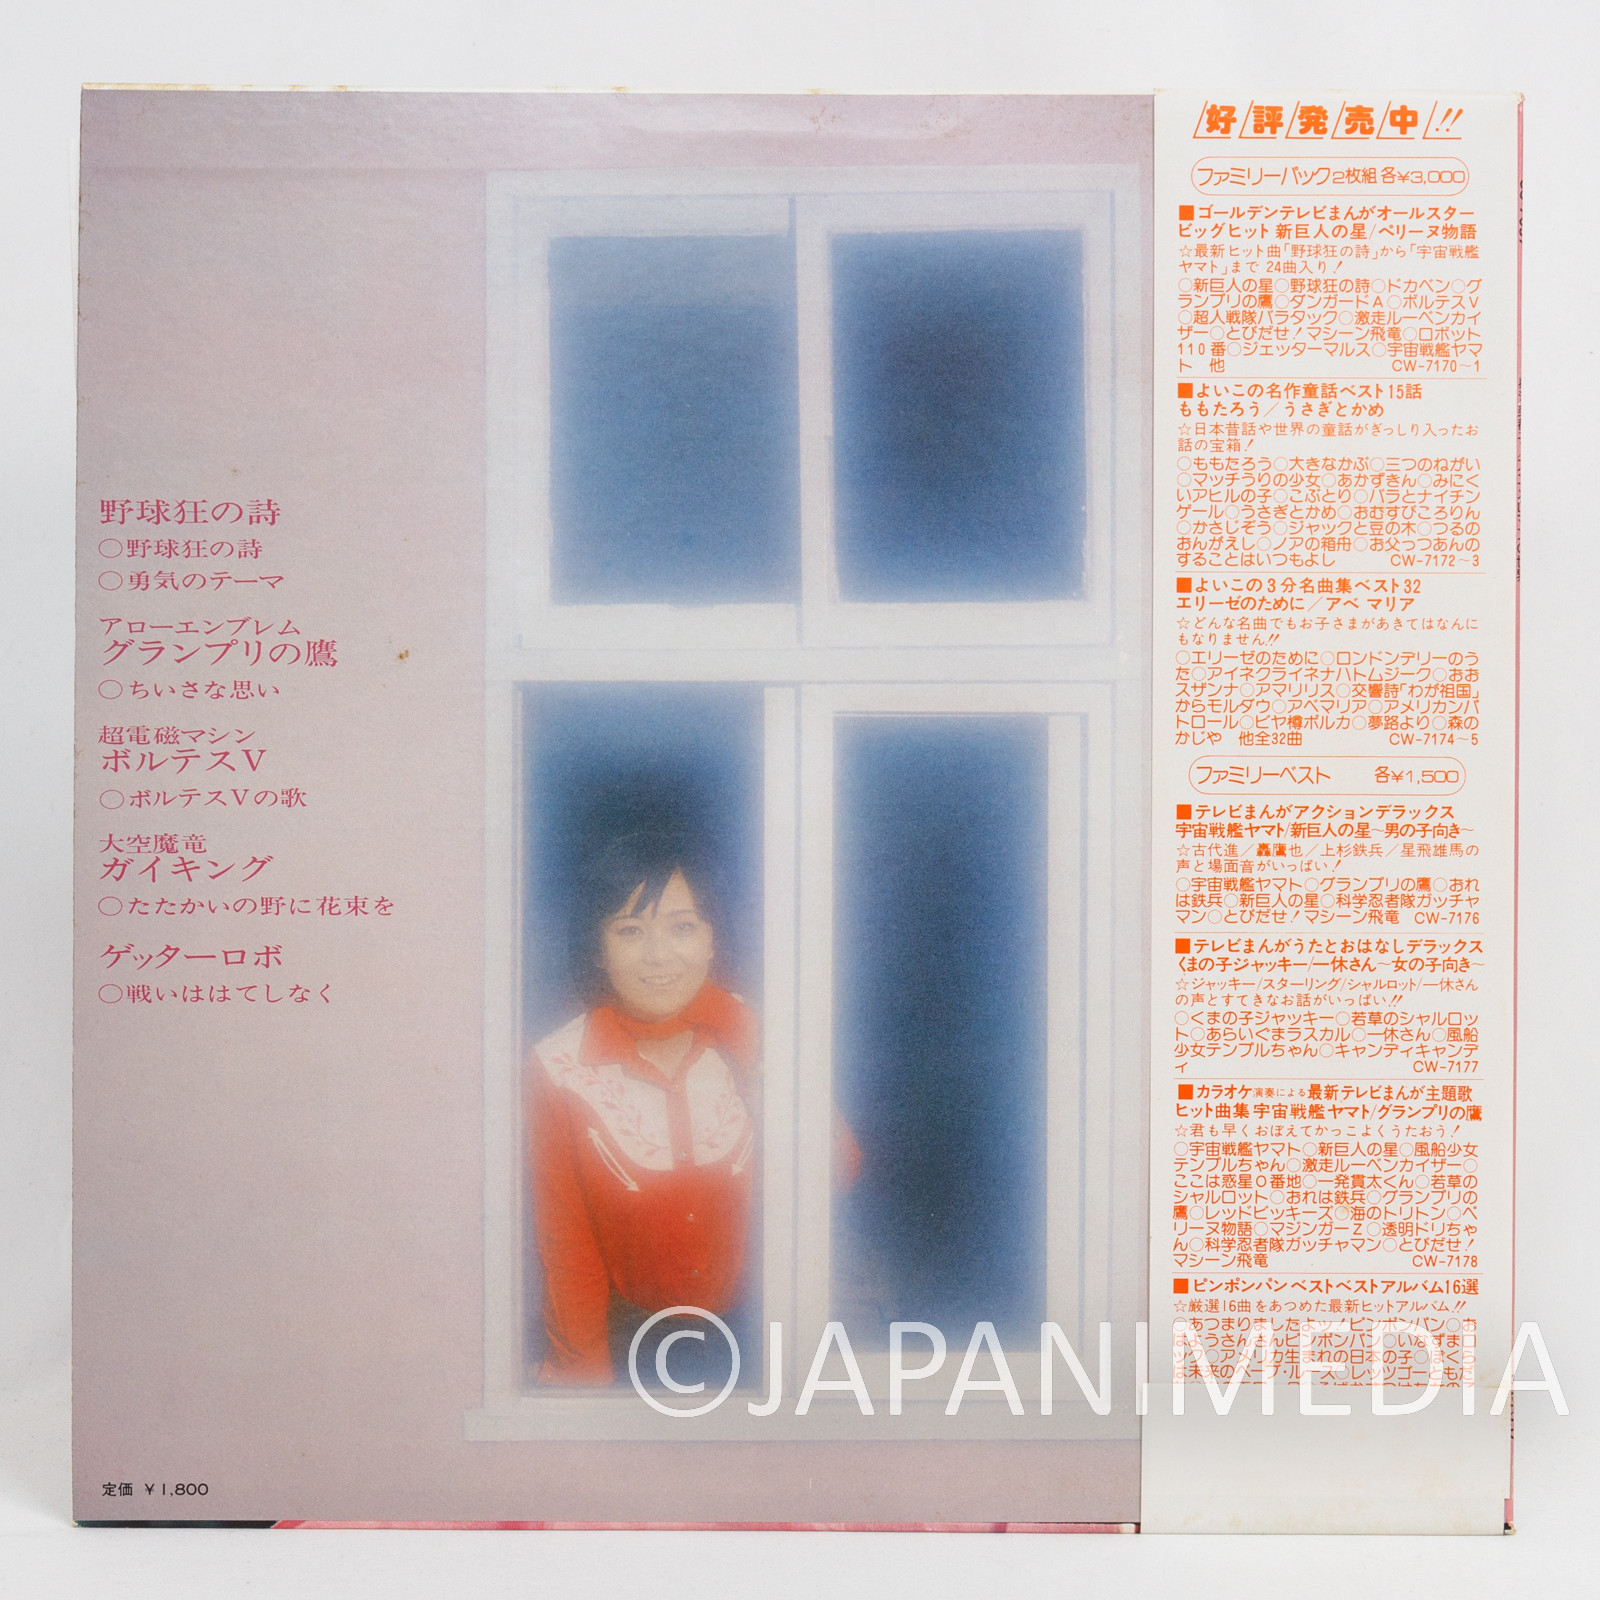 Mitsuko Horie World of Anime Roman LP Vinyl Record CS-7057